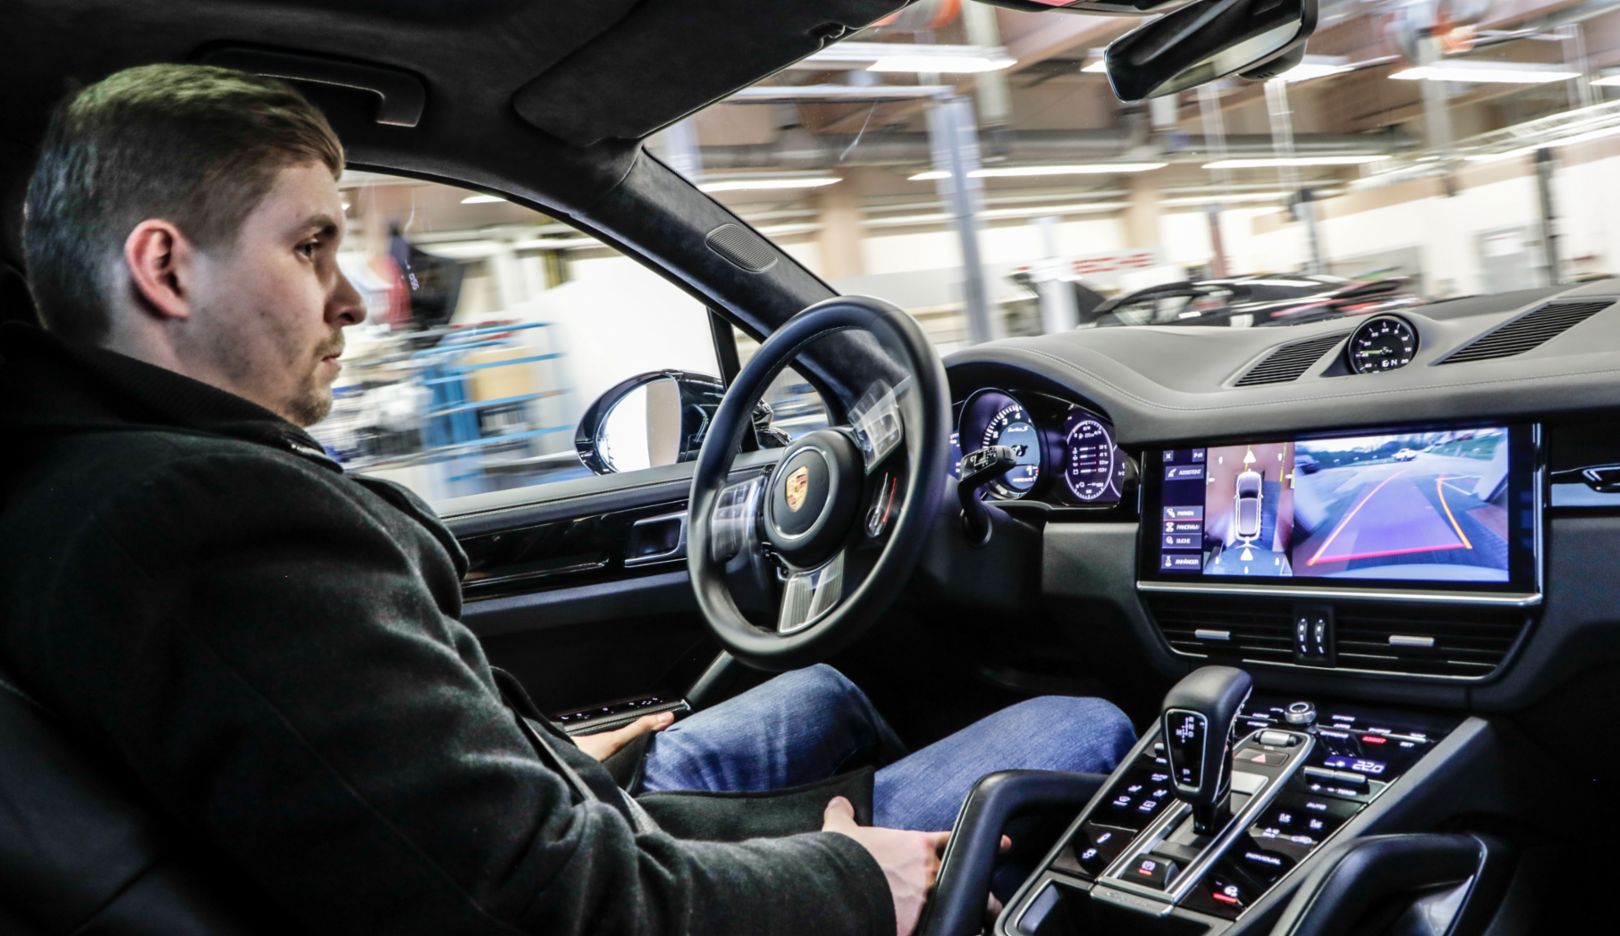 Porsche shows autonomous driving in the workshop